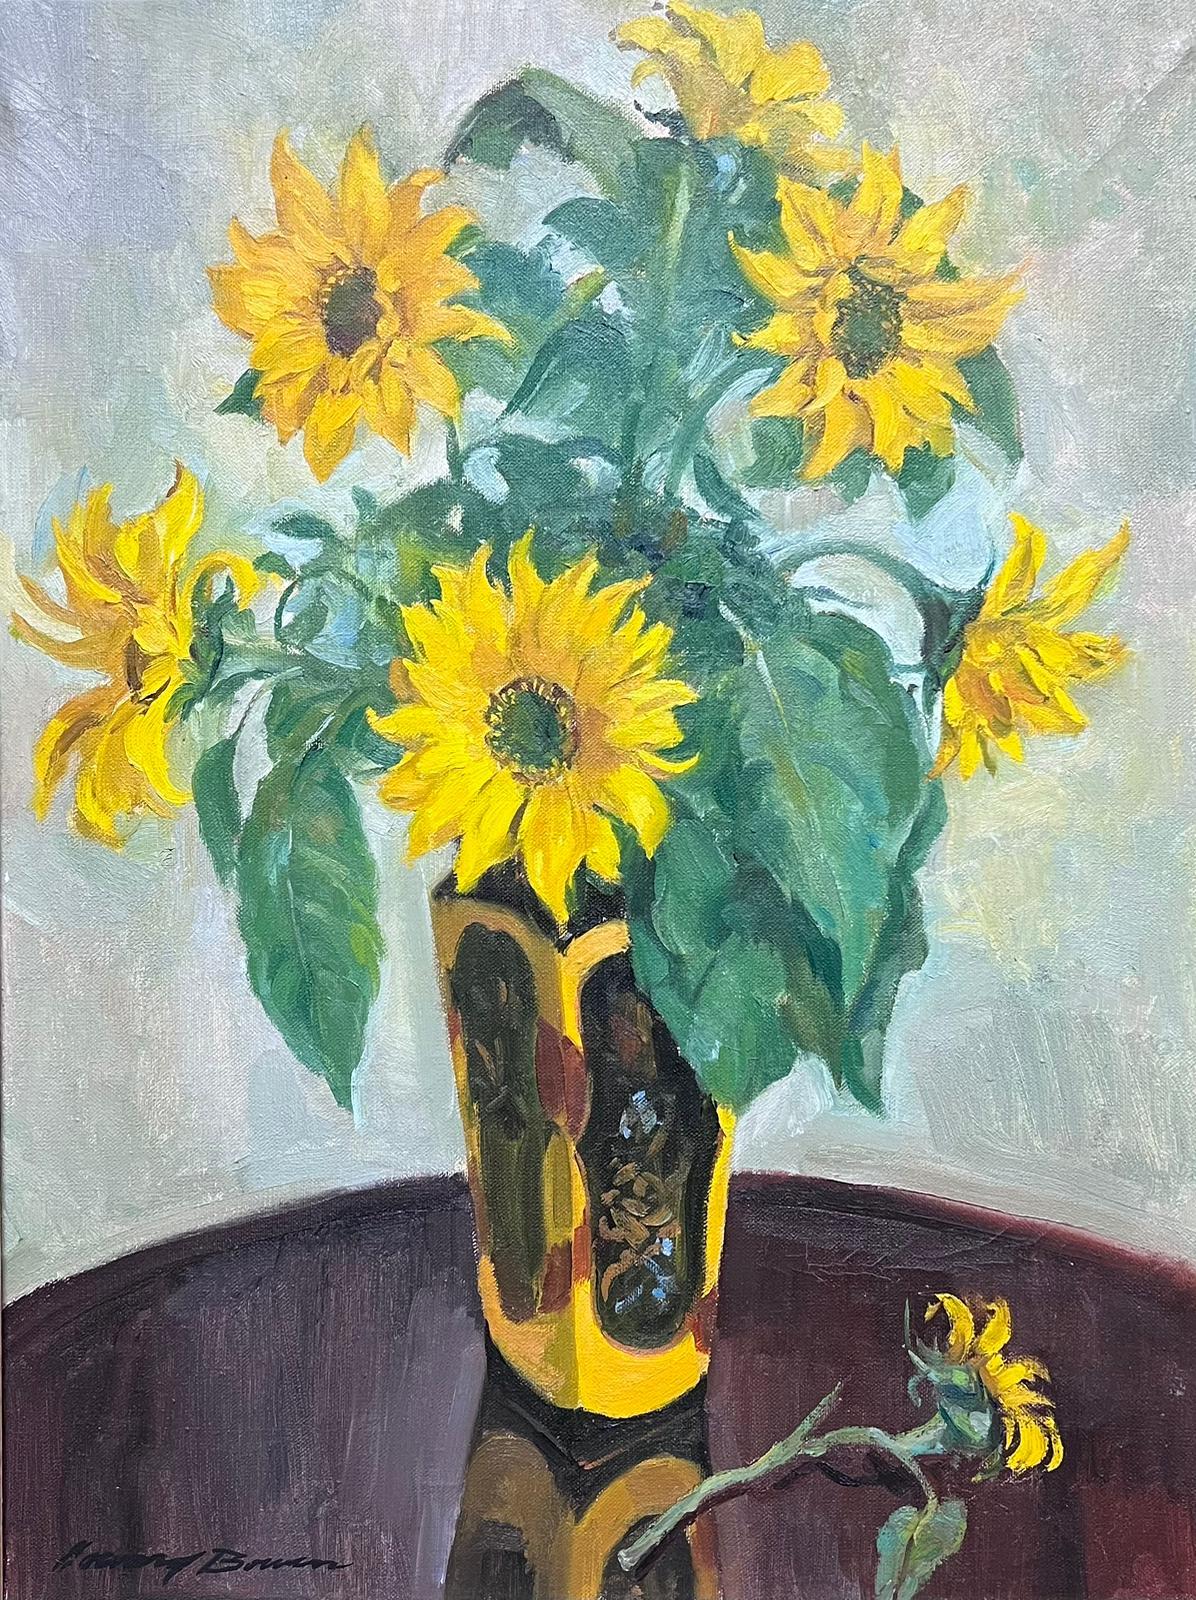 Sonnenblumen in Vase 1950er Jahre English Impressionist Signiertes Ölgemälde auf Leinwand – Painting von Mid 20th Century English Impressionist